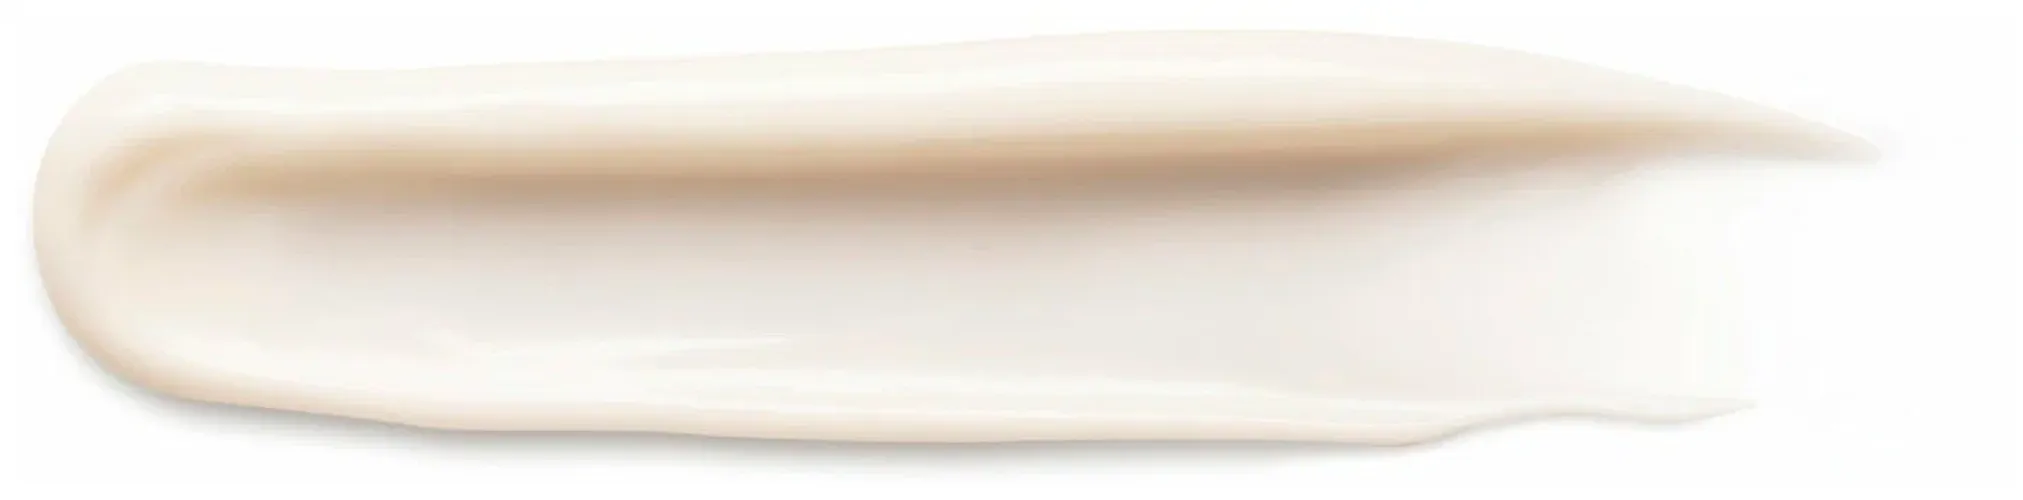 Ночной антивозрастной крем для лица Vichy Neovadiol охлаждающий с гиалуроновой кислотой и ниацинамидом, 50 мл, фото